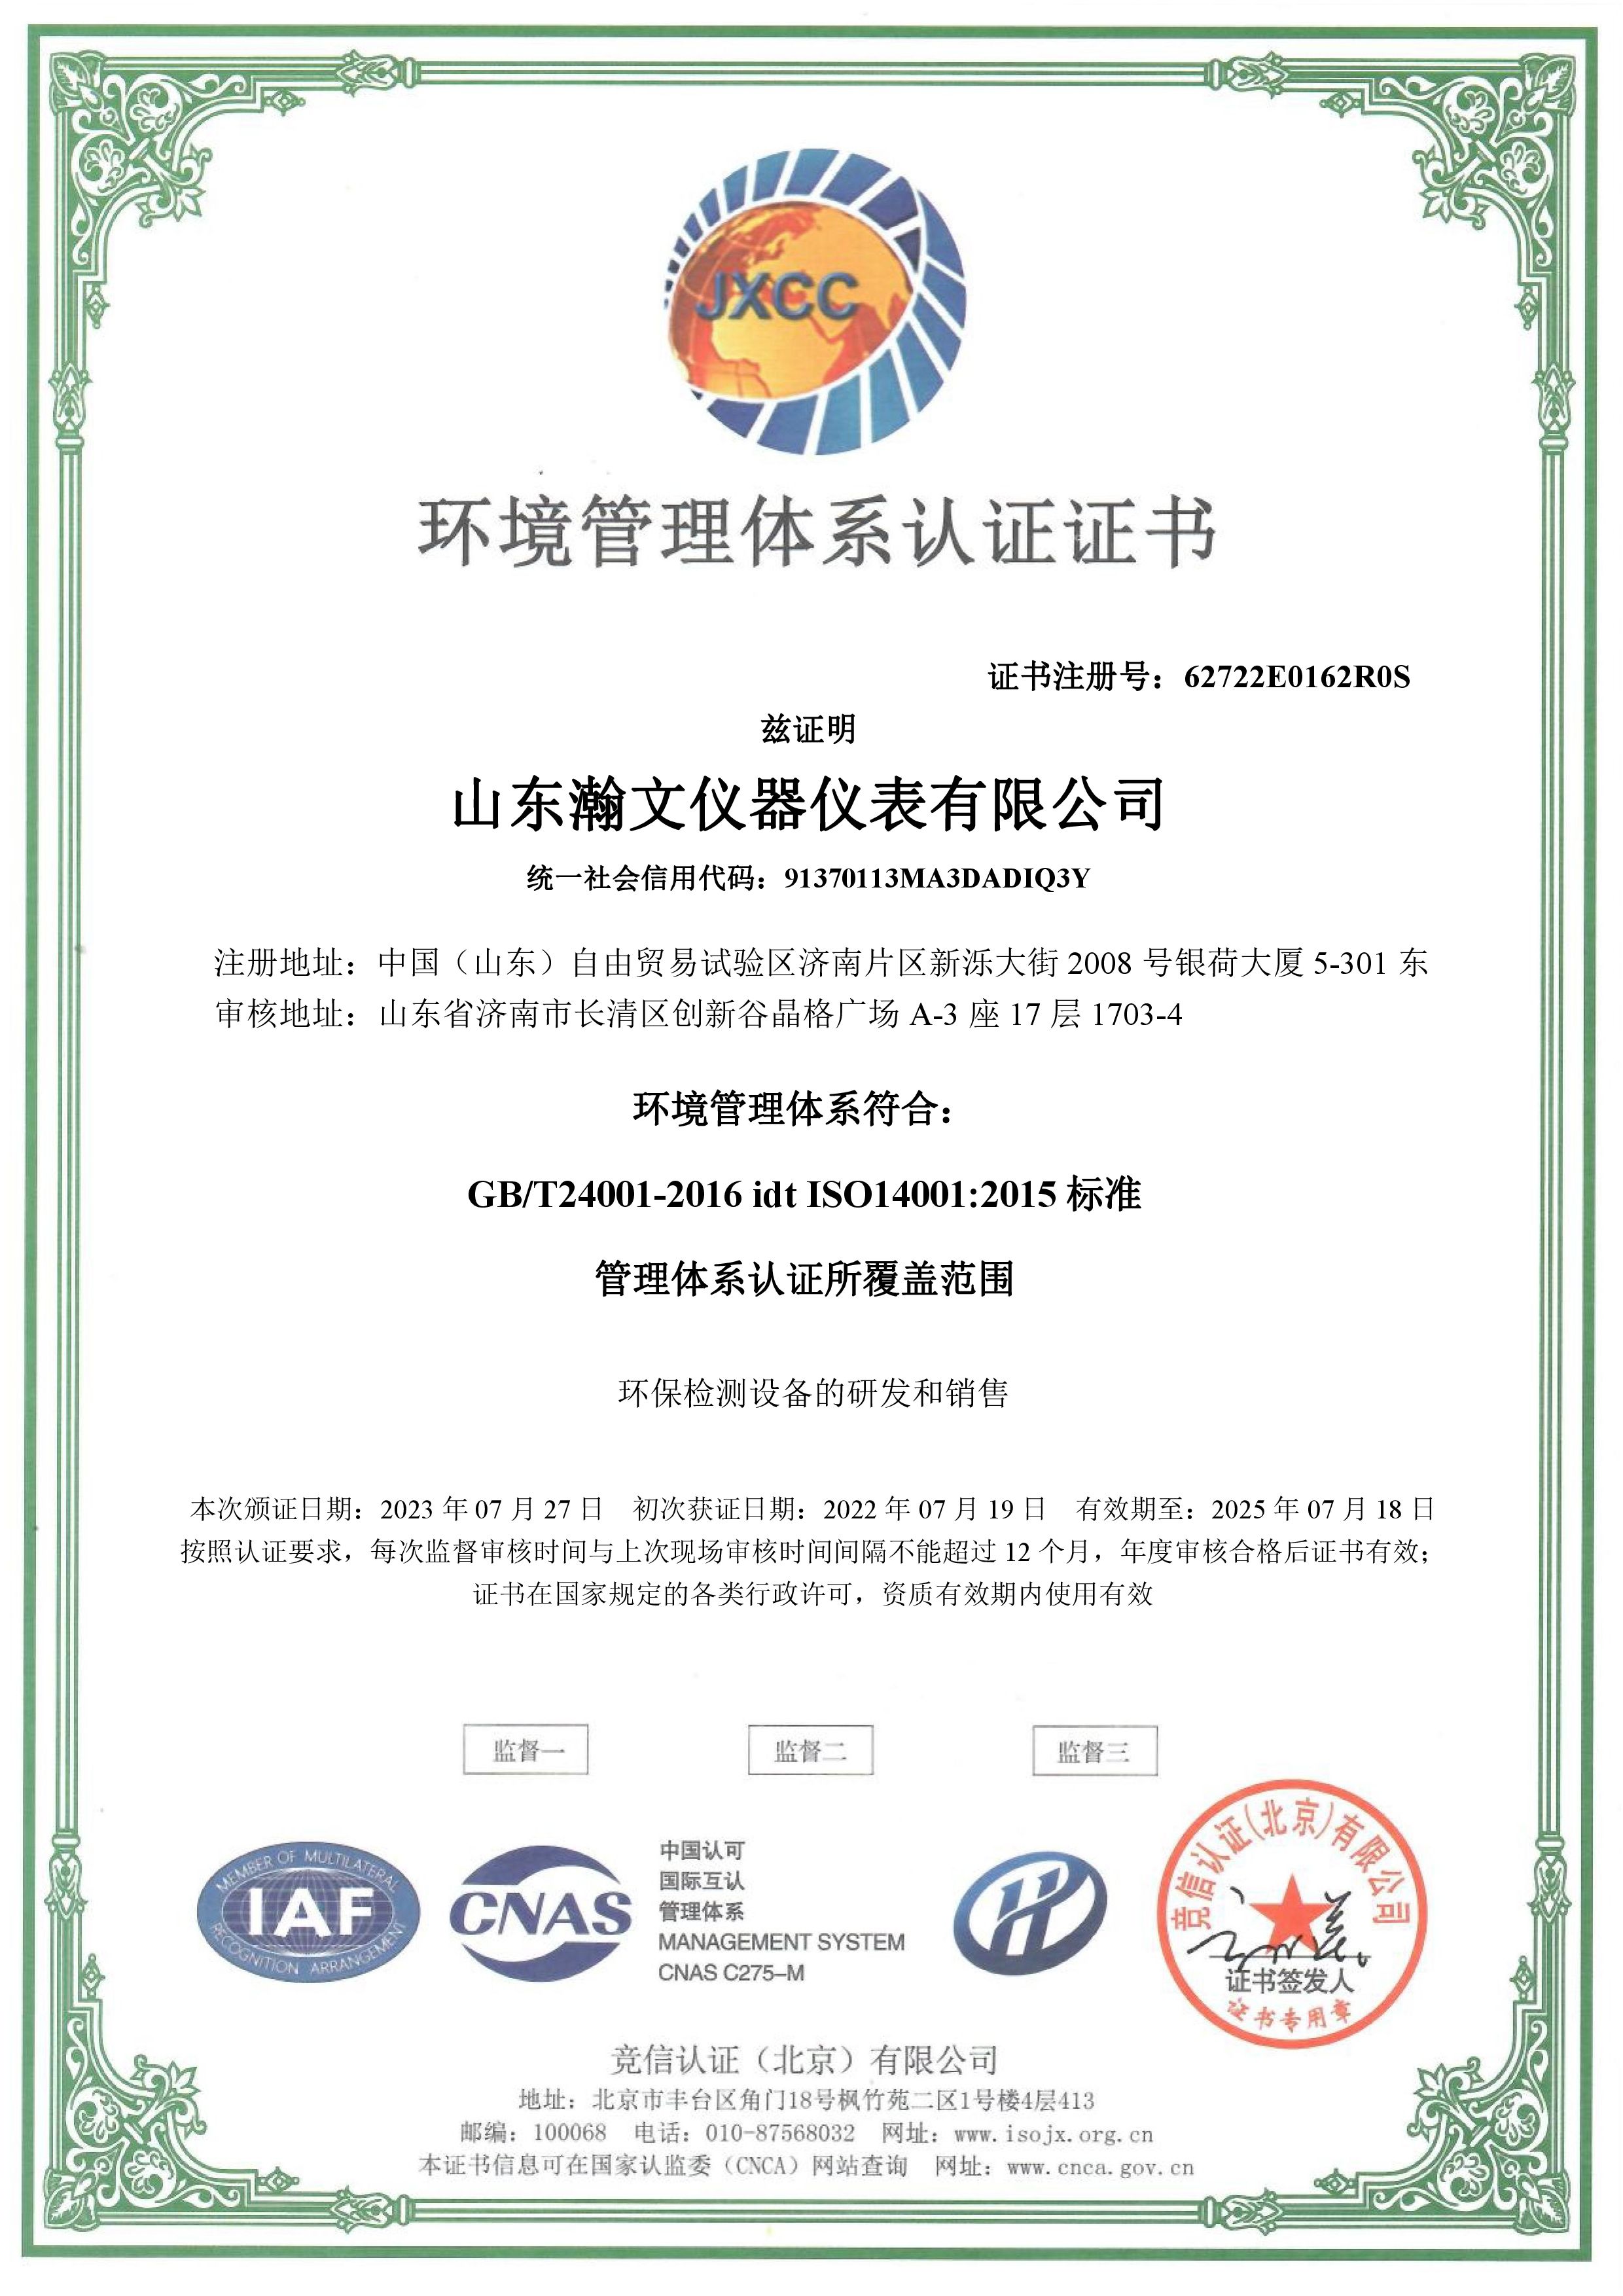 榮獲ISO14001環境管理體系認證證書